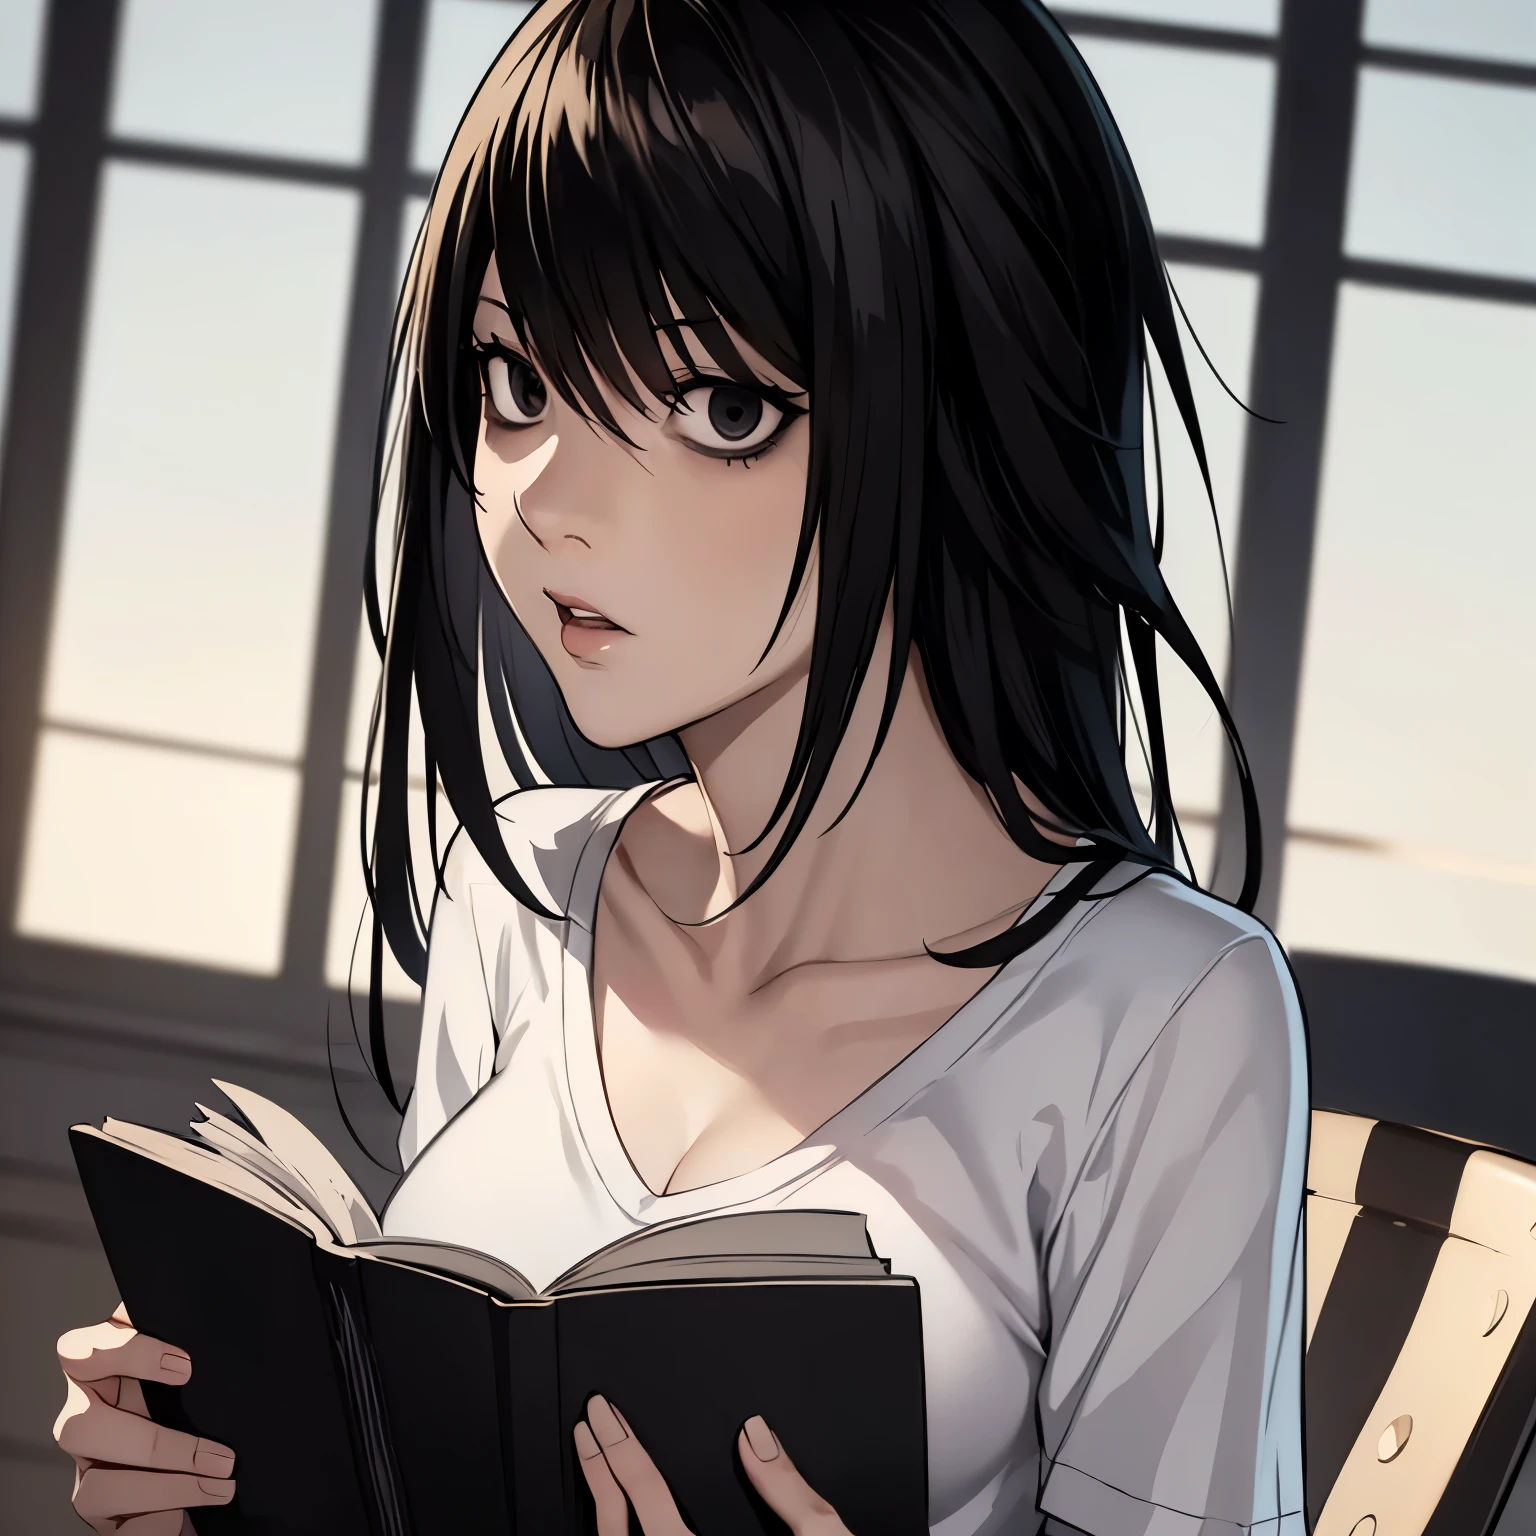 8k, boquilla, ((una mujer hermosa)),((dibujo de nota de muerte)), L cuerpo femenino en solitario, ((una mujer hermosa)), ((ojos negros)), pelo largo, pelo negro, camiseta blanca camisa leyendo un libro